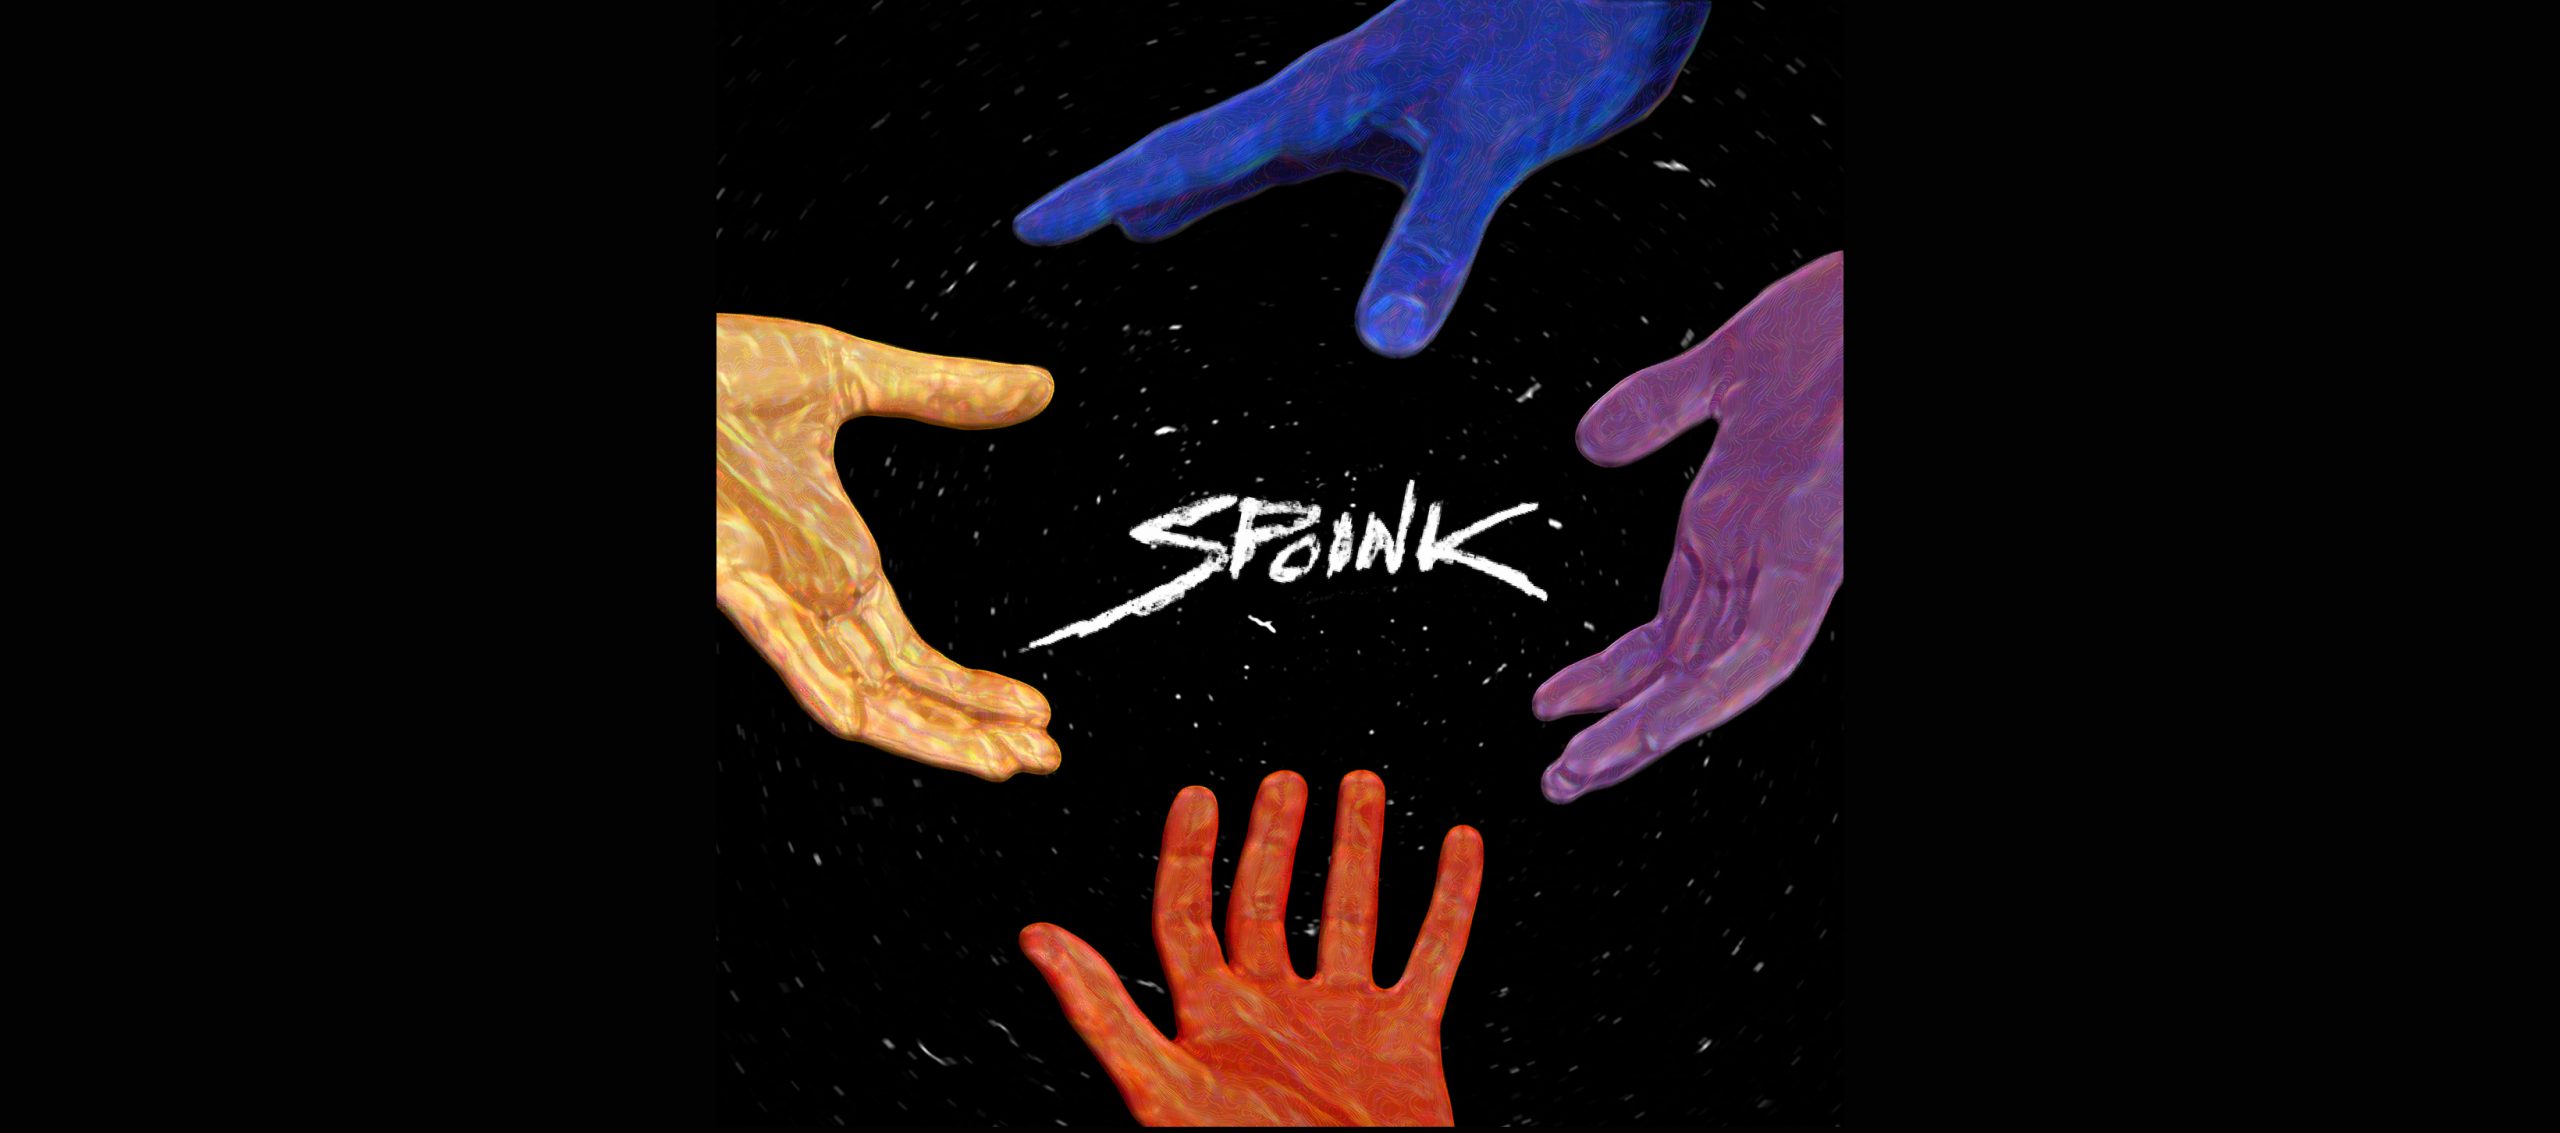 Spoink cover album SHARP - groupe émergent live - musique electro en impro totale quartet - papa t. prod